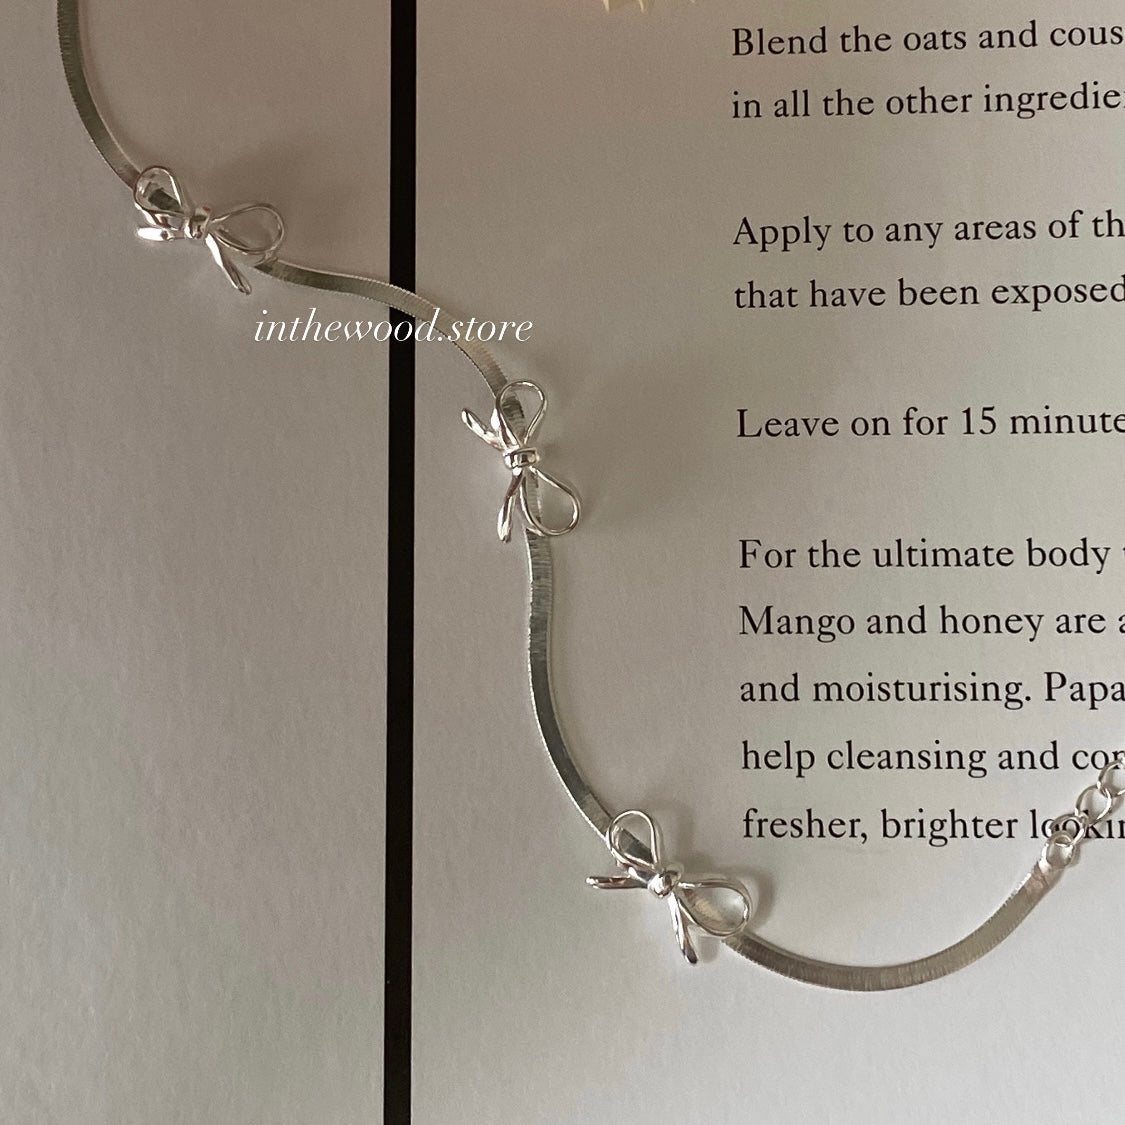 [925silver] Silky Ribbon Necklace/ Bracelet